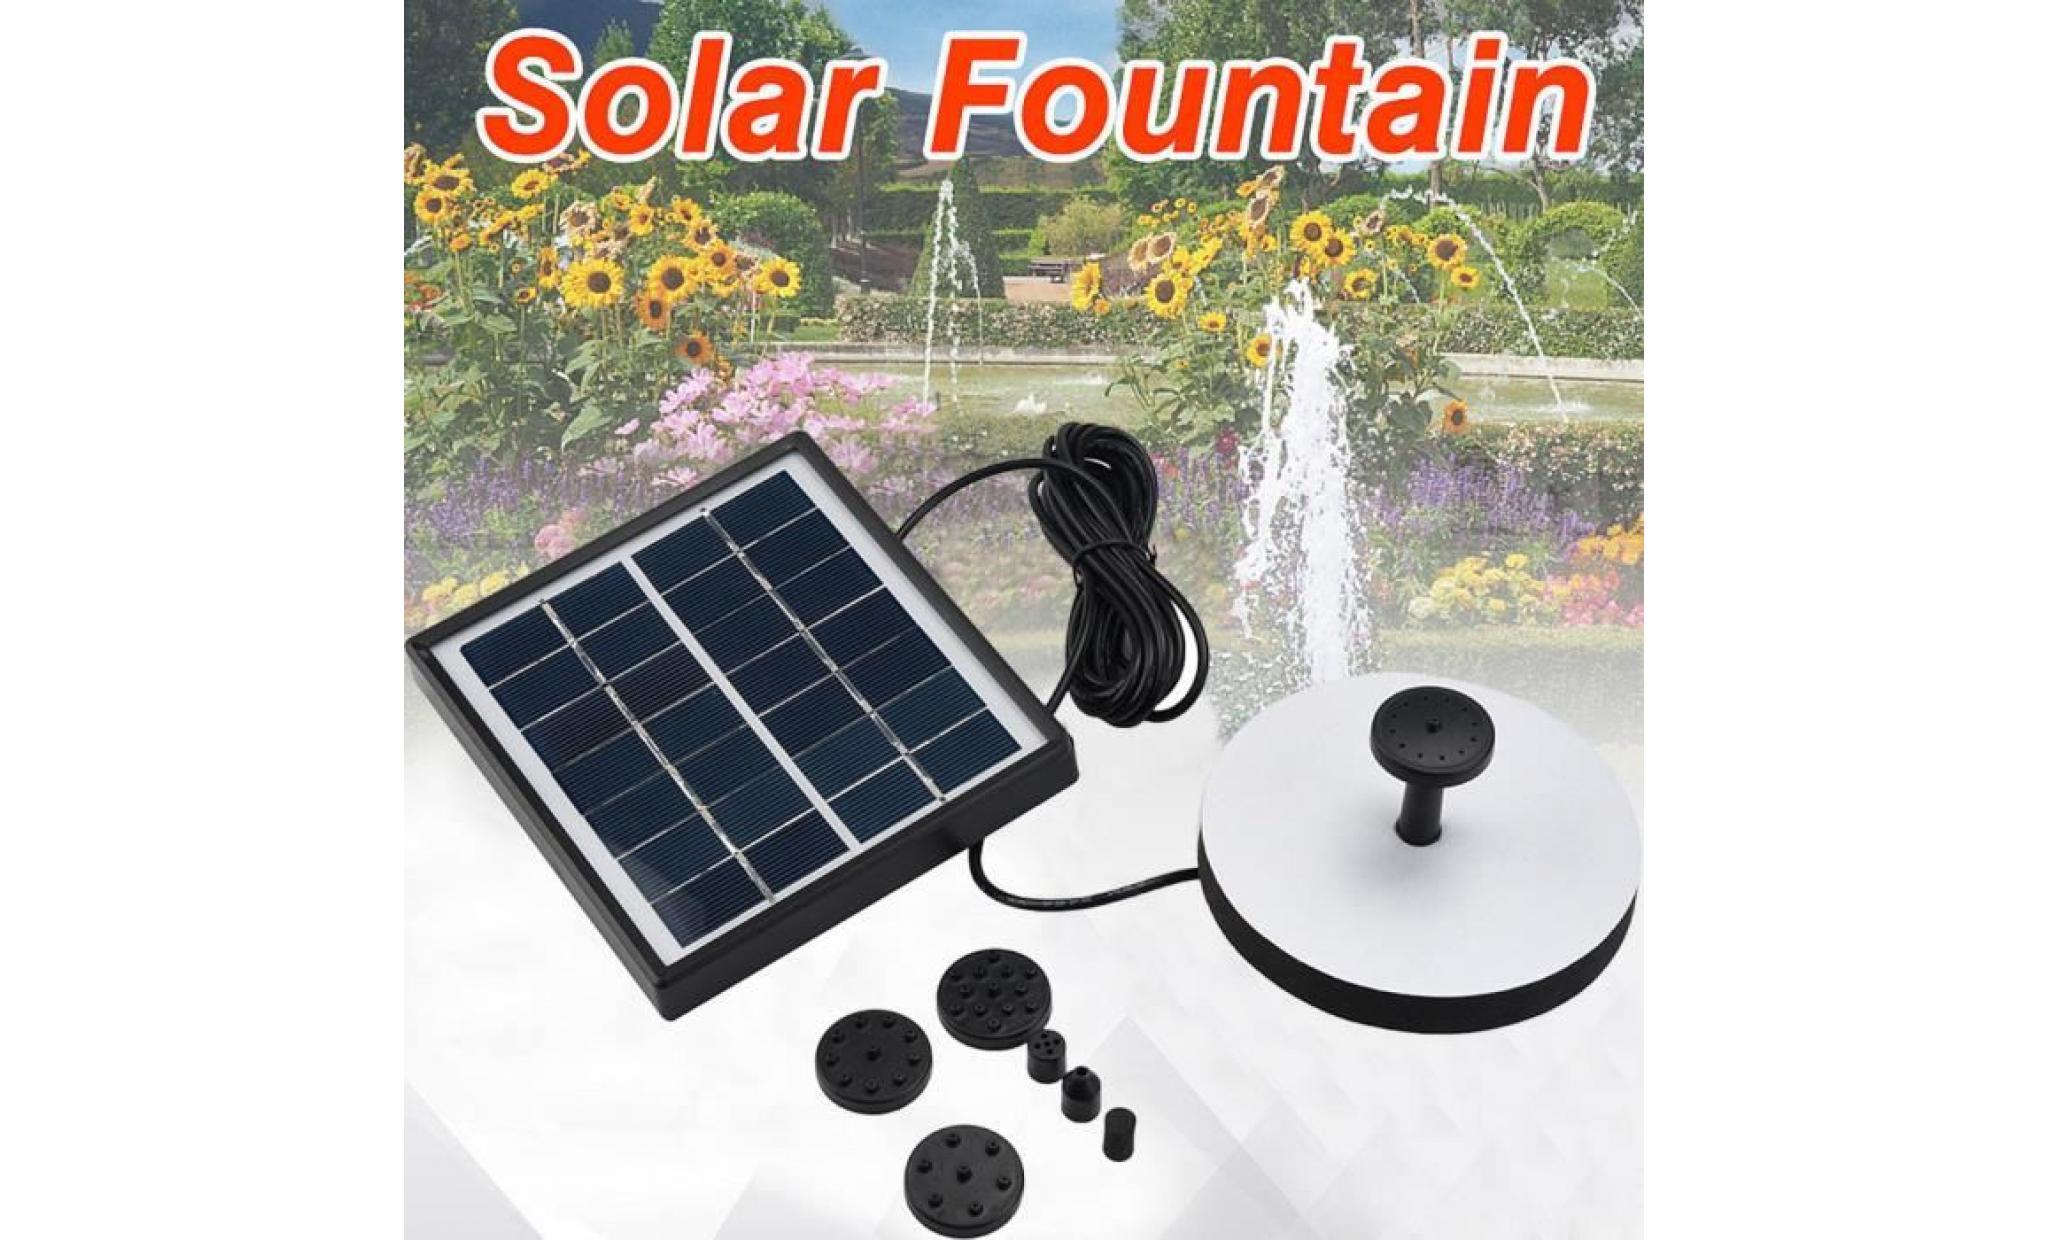 iportan® panneau solaire d'eau d'alimentation fontaine pompe kit piscine étang de jardin arrosage submersible noir_42